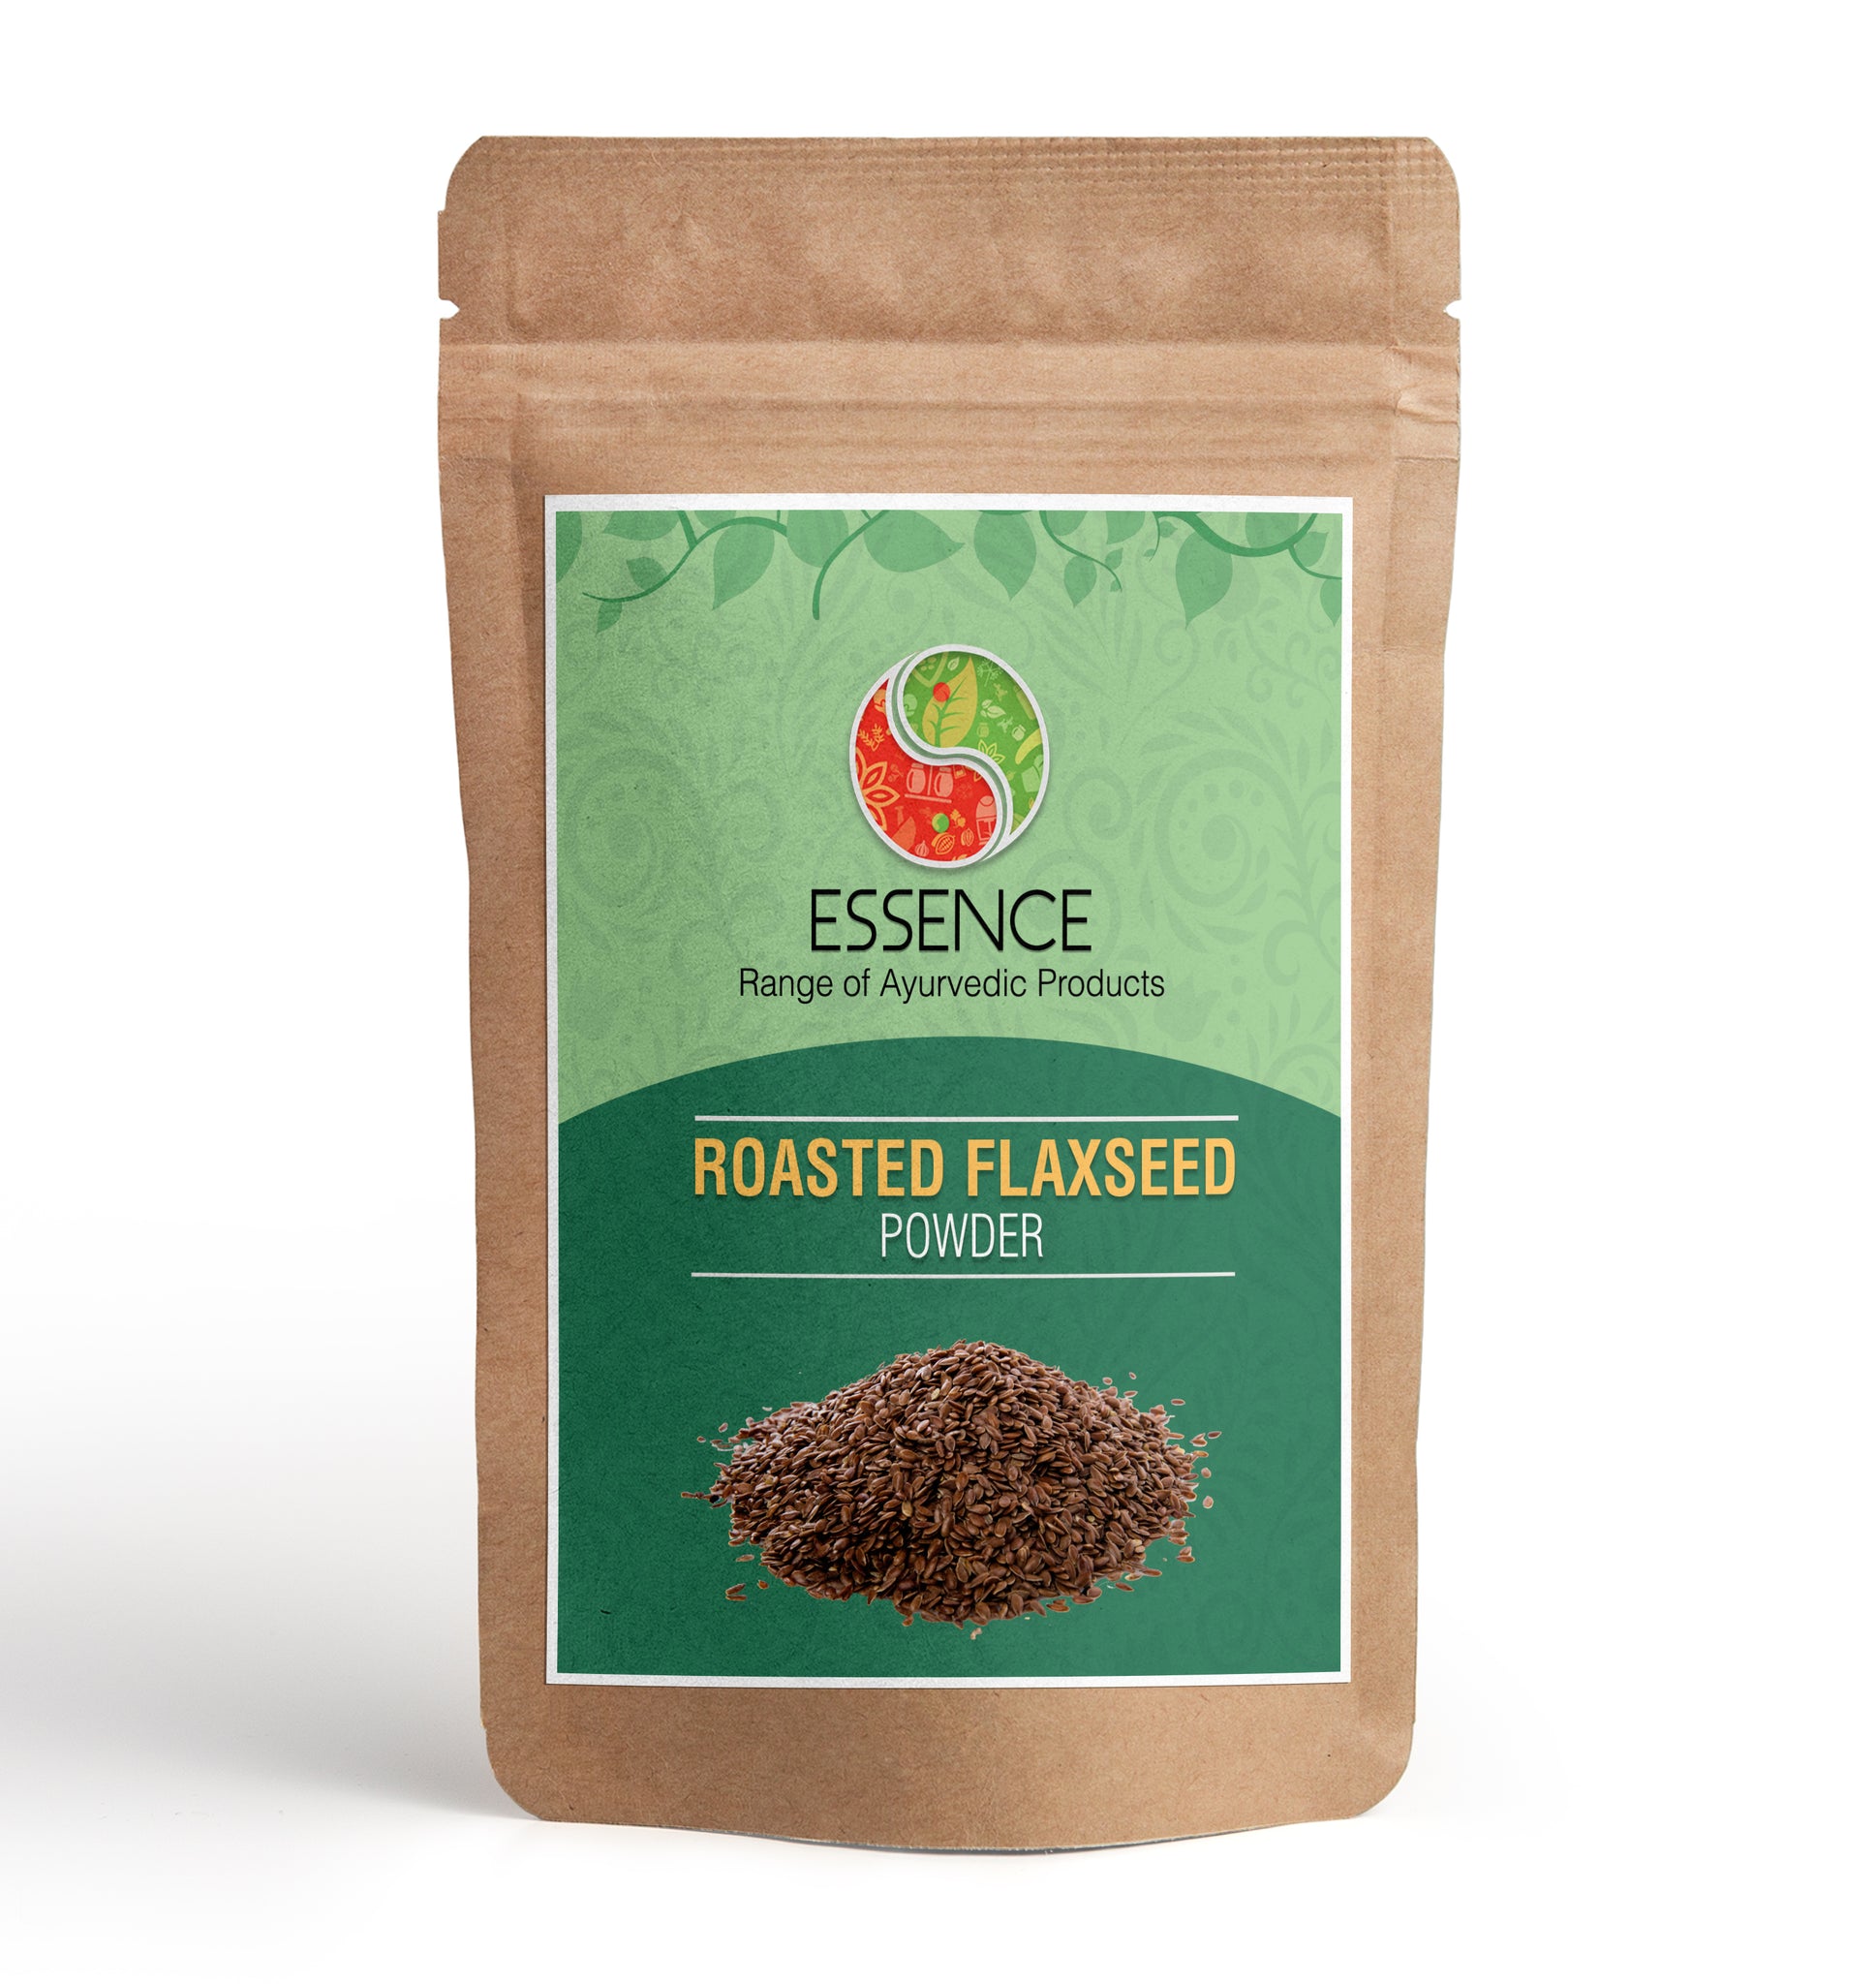 Essence Roasted Flaxseed Powder, Alsi Beej, Linum usitatissimum, Linseed